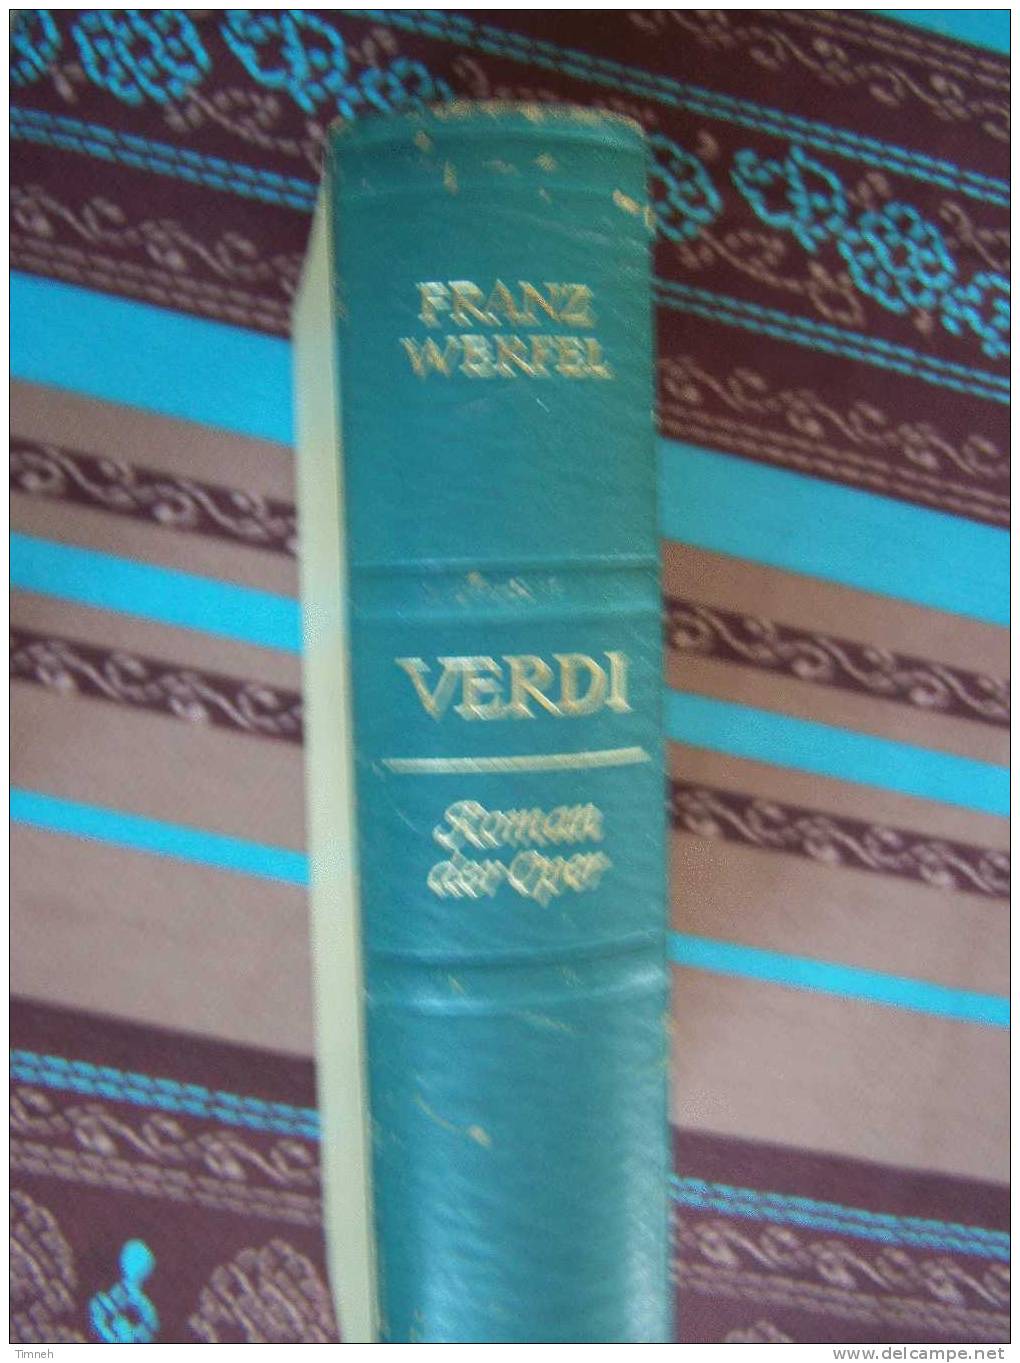 VERDI-Roman Der Oper-Franz Werfel-1955-Deutsche Buch Gemeinschaft- - Biographien & Memoiren